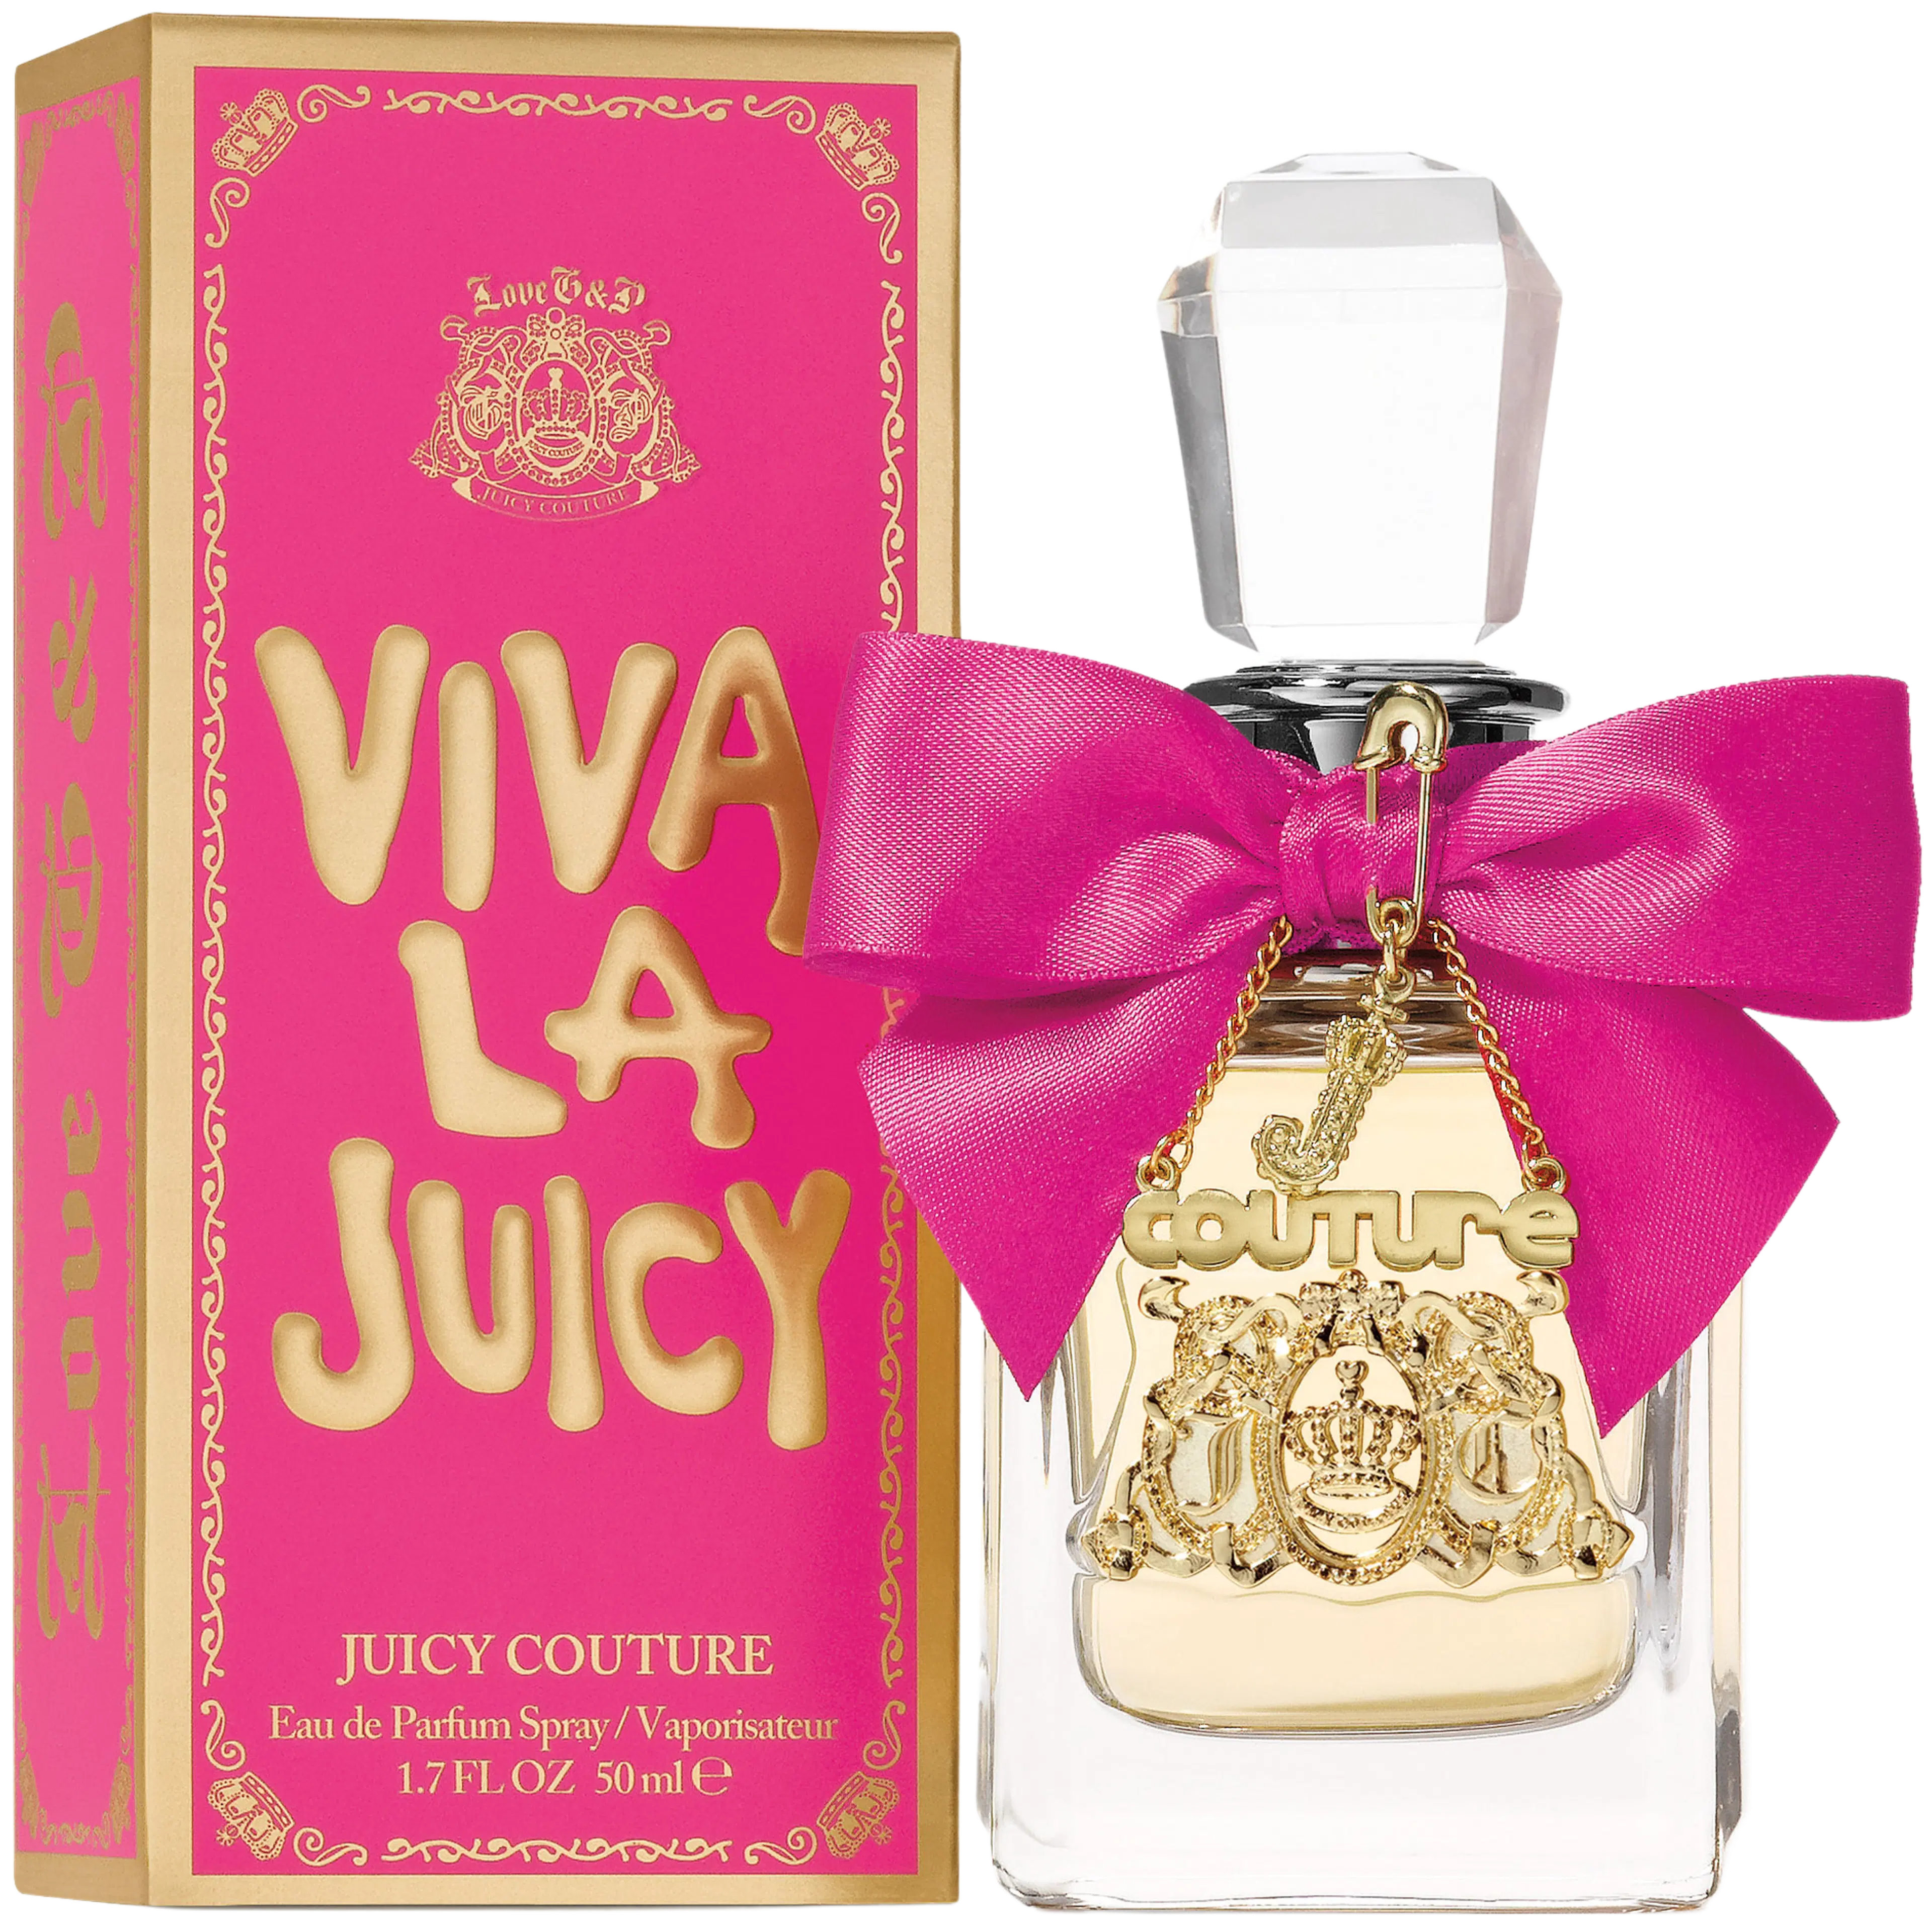 Juicy Couture Viva La Juicy EdP tuoksu 50ml